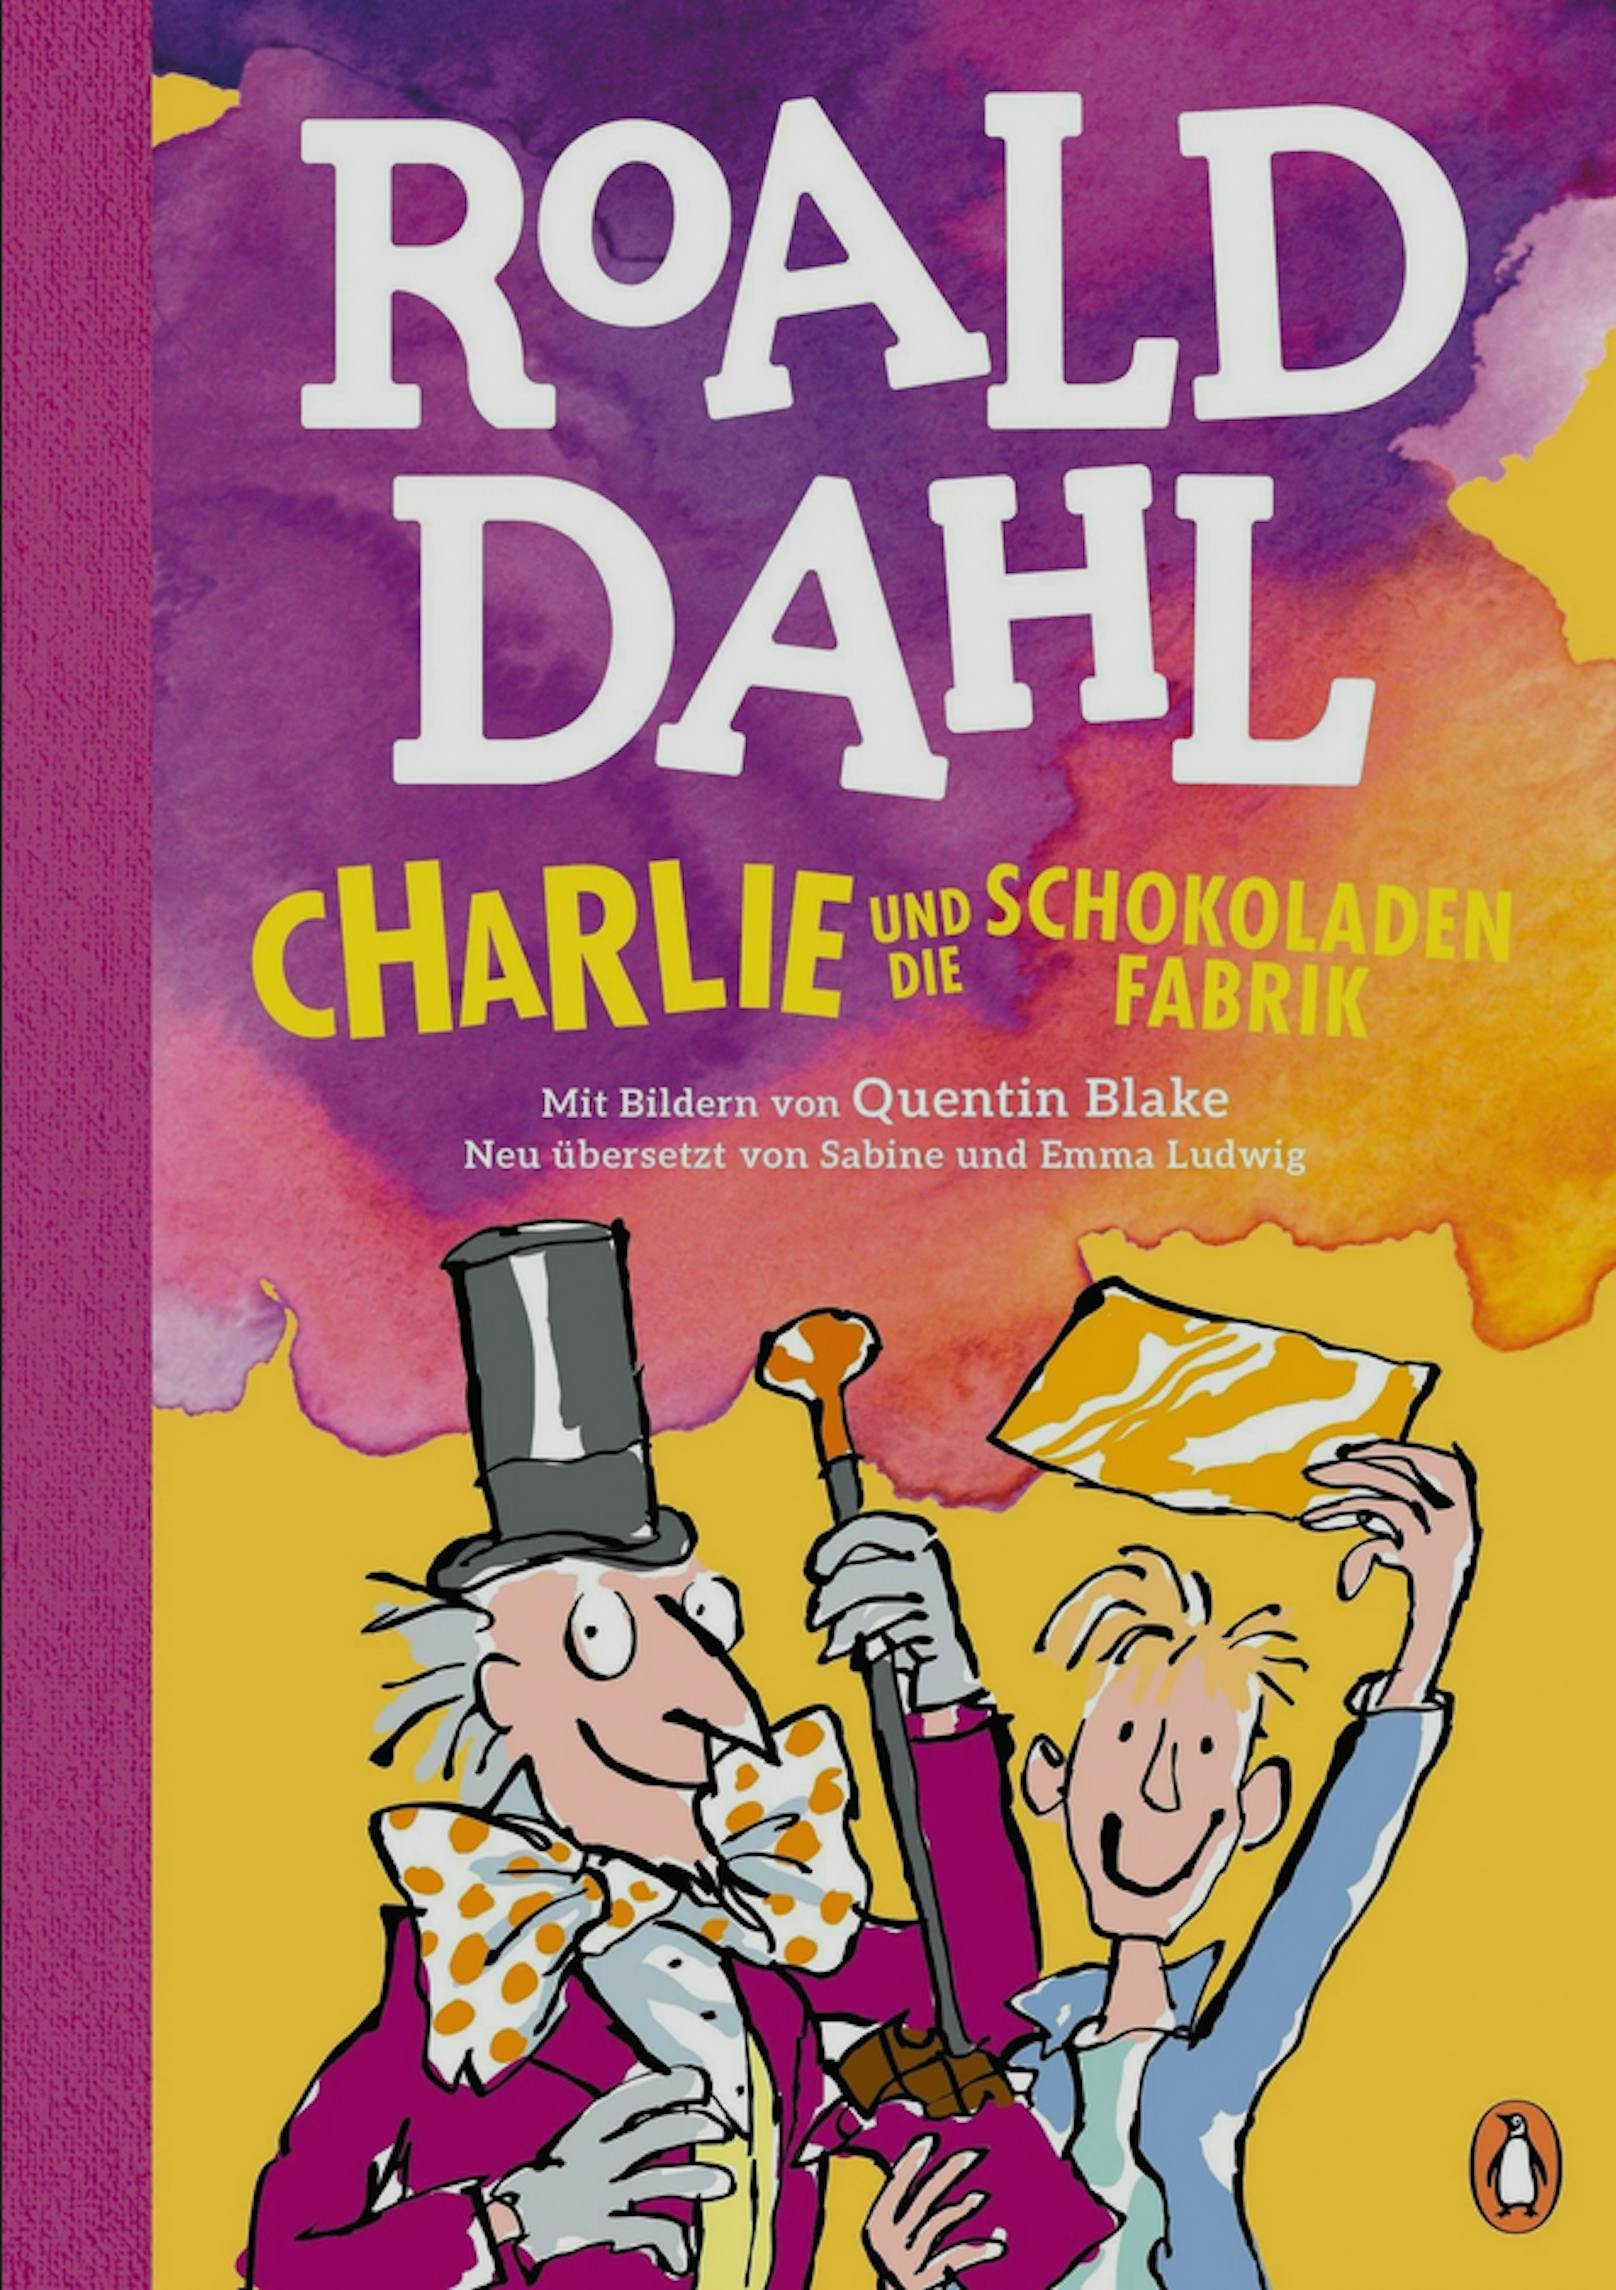 Auch das Kinderbuch "Charlie und die Schokoladenfabrik" ist von den Änderungen betroffen.